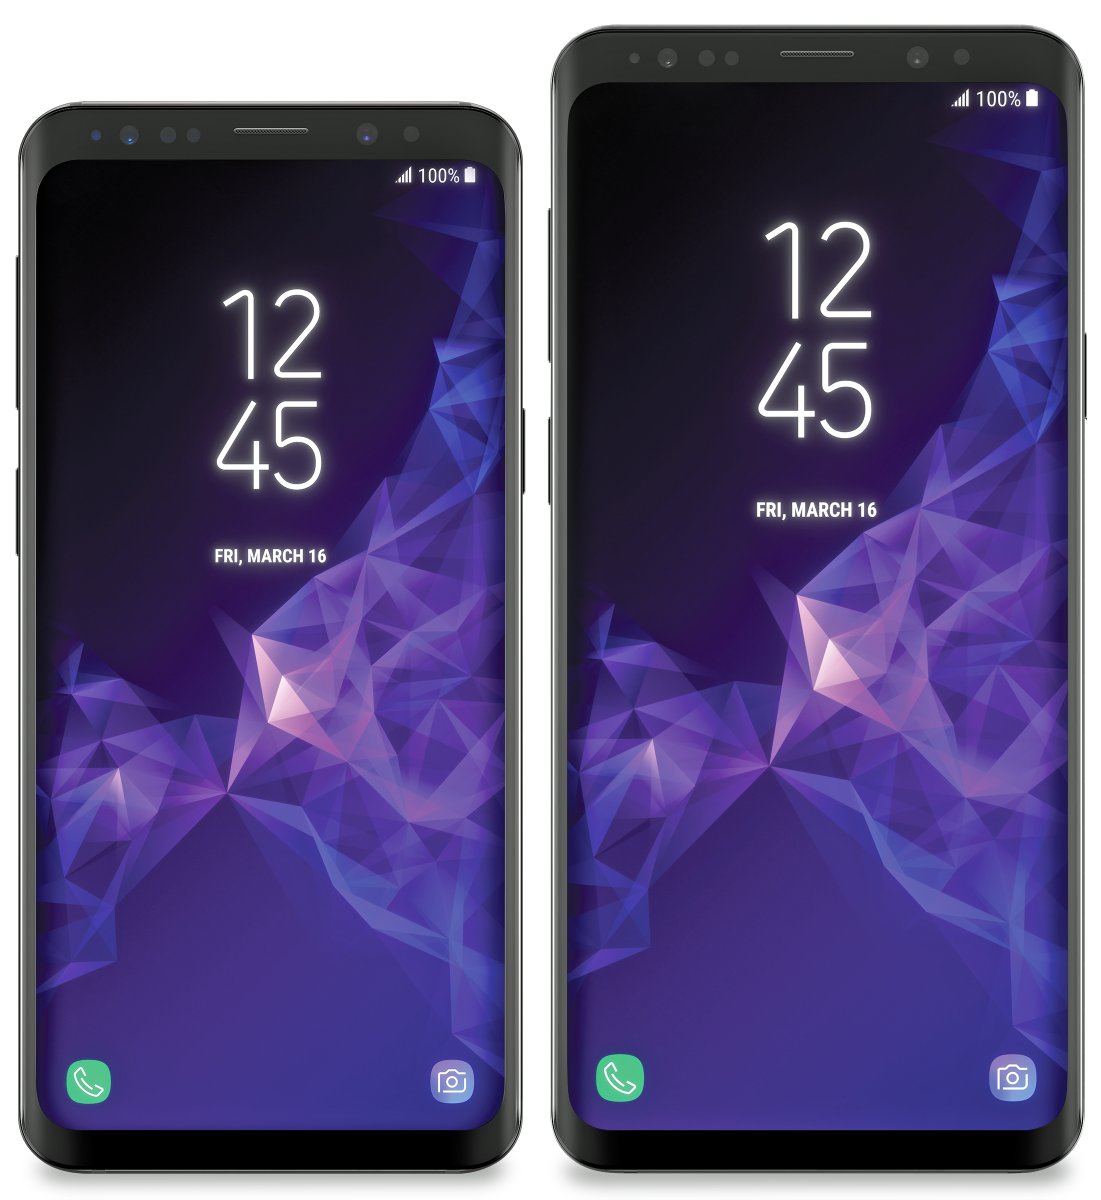 Immagine pubblicata in relazione al seguente contenuto: Evan Blass pubblica nuove immagini degli smartphone Galaxy S9 e Galaxy S9+ | Nome immagine: news27767_Galaxy-S9-Galaxy-S9-Plus_1.jpg